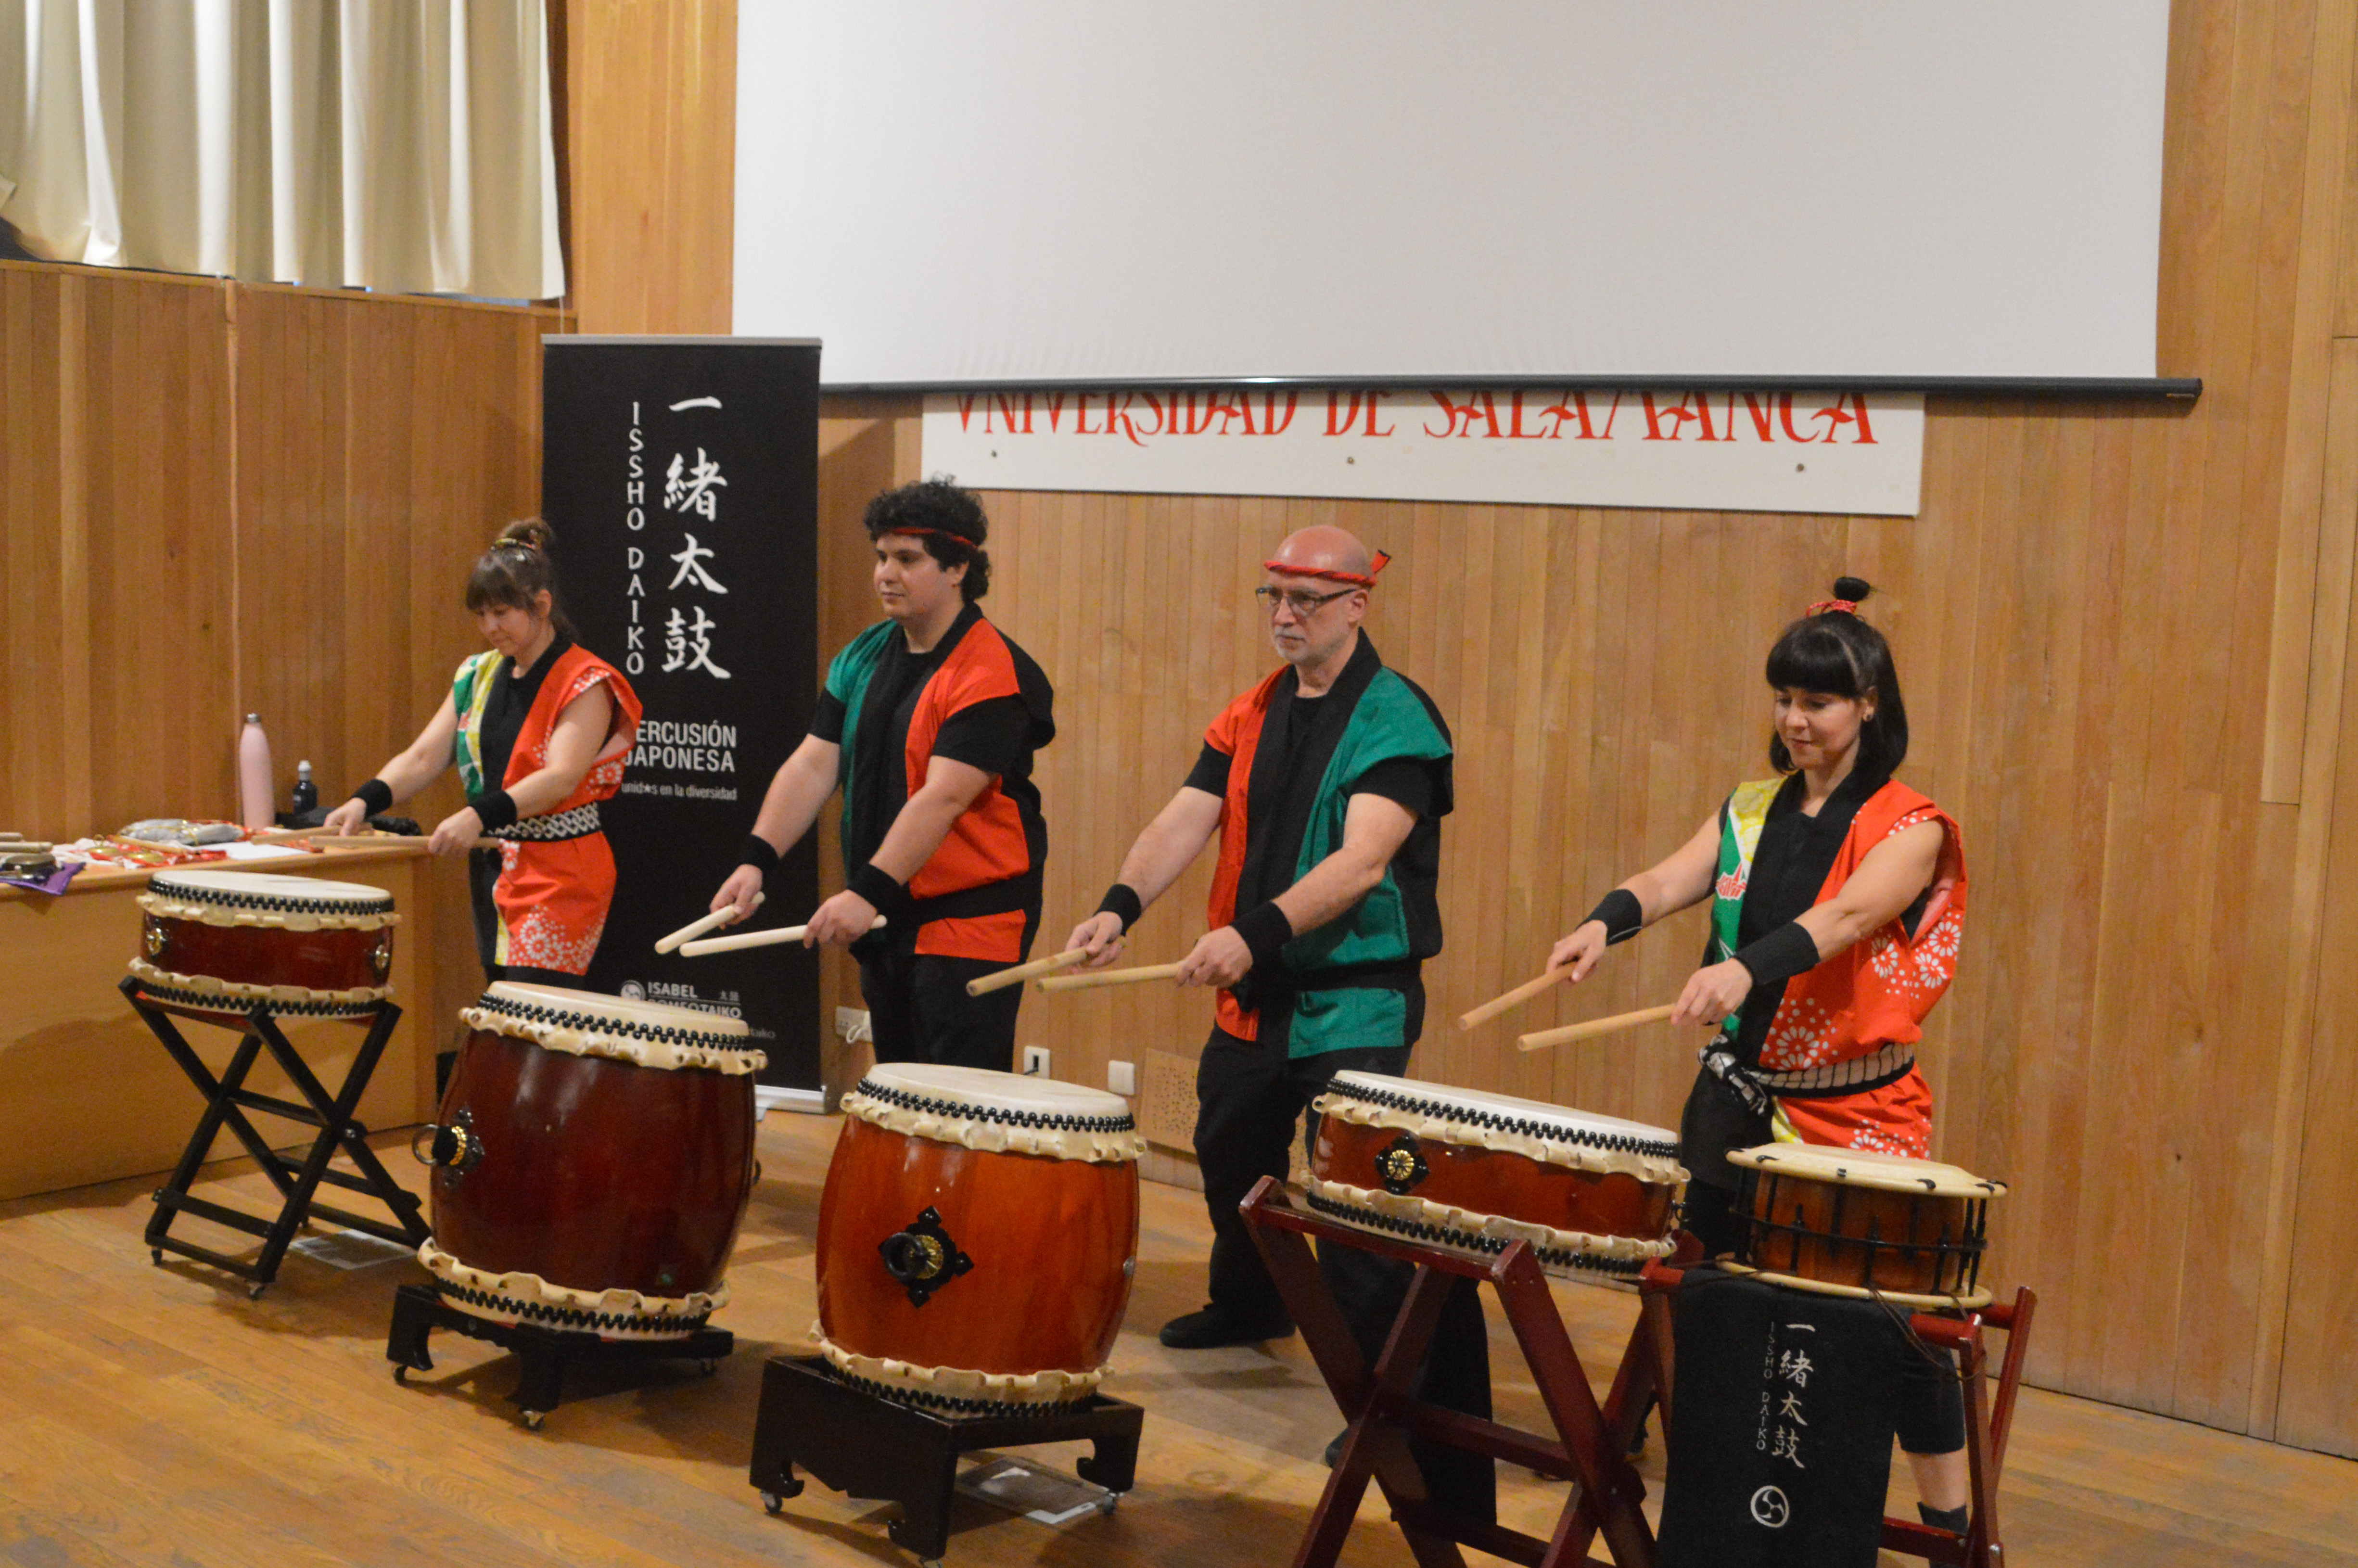 La XXII Semana del Japón acerca a Salamanca la cultura y costumbres niponas